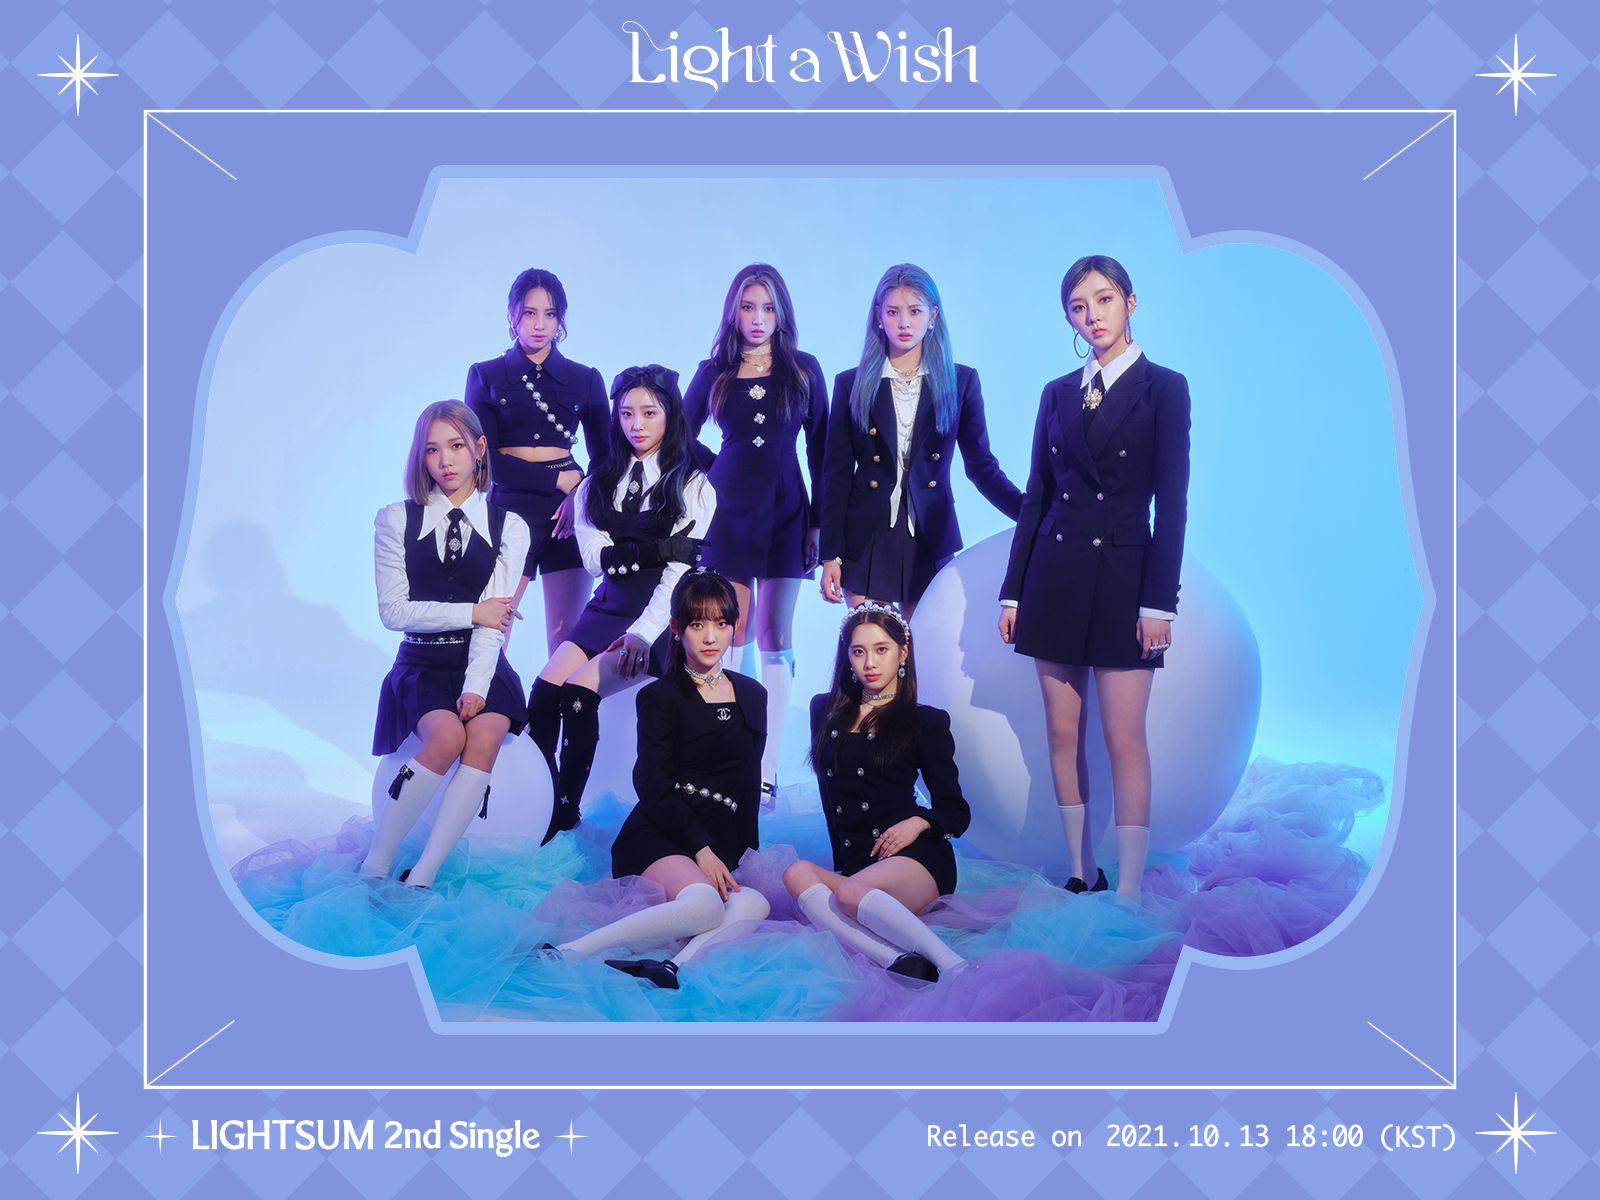 라잇썸(LIGHTSUM) 2nd Single [Light a Wish] Concept Image #1 Light Ver.